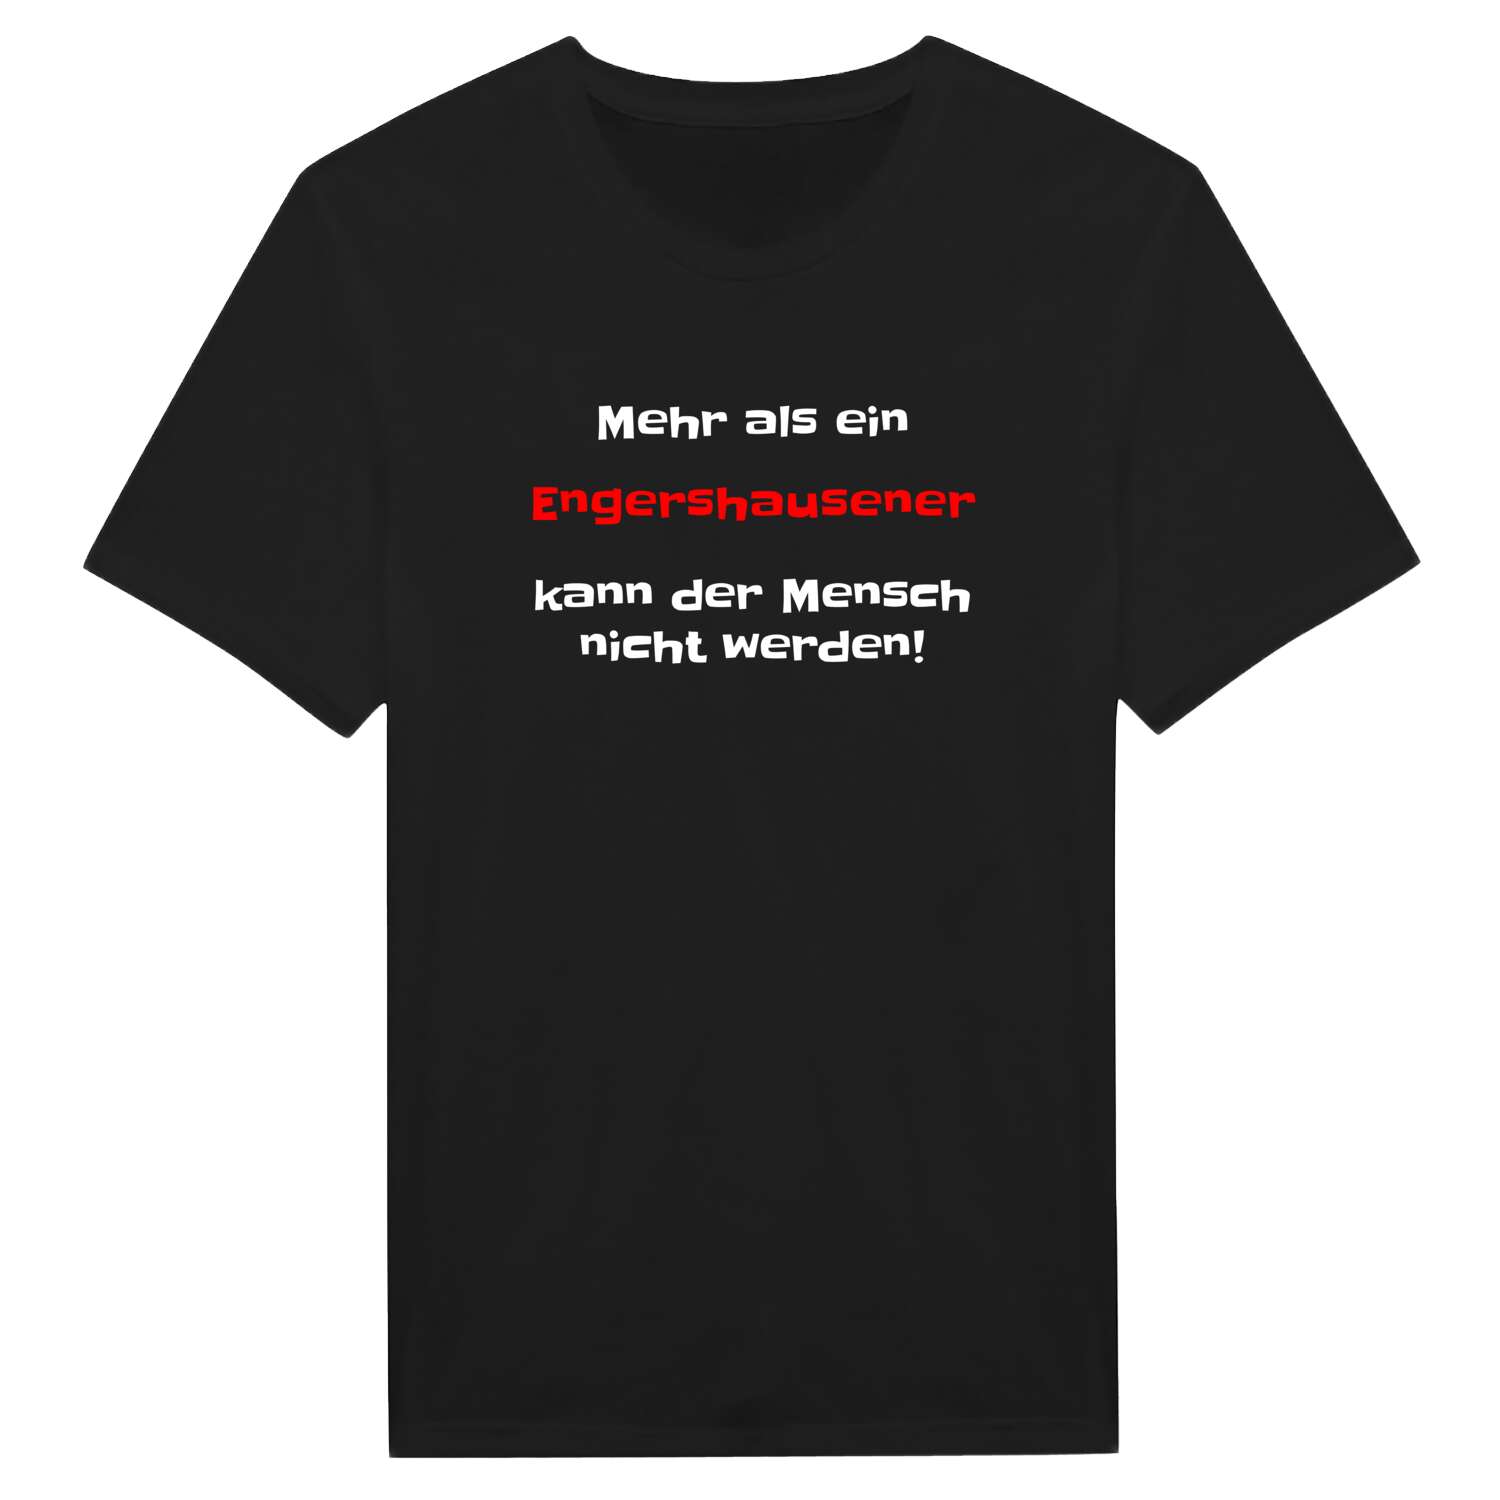 Engershausen T-Shirt »Mehr als ein«